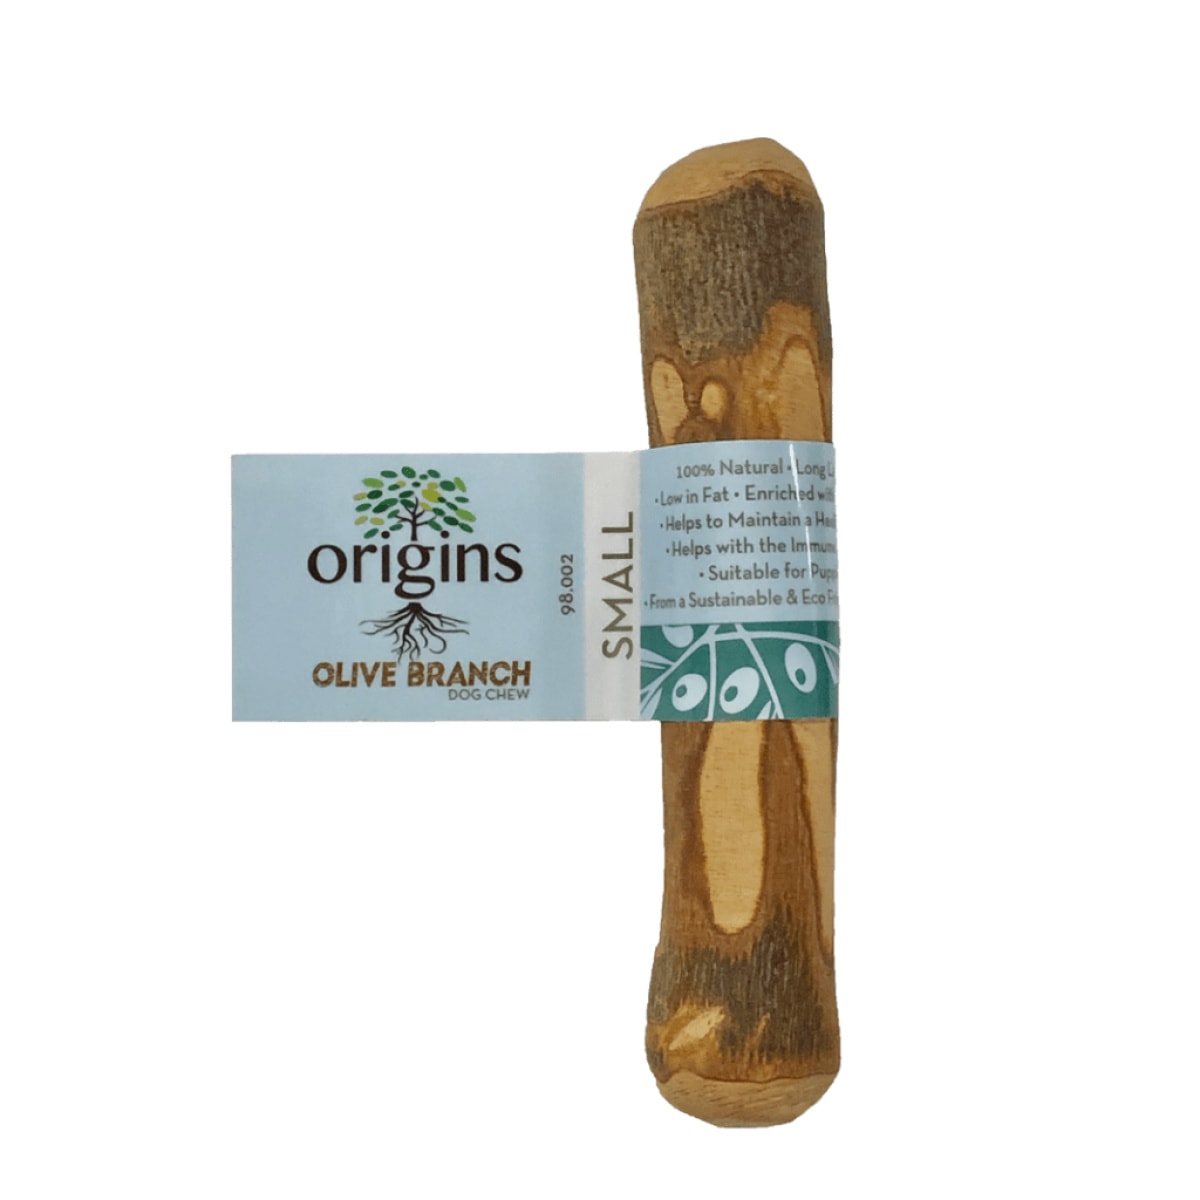 Origins Olive Branch Main Image